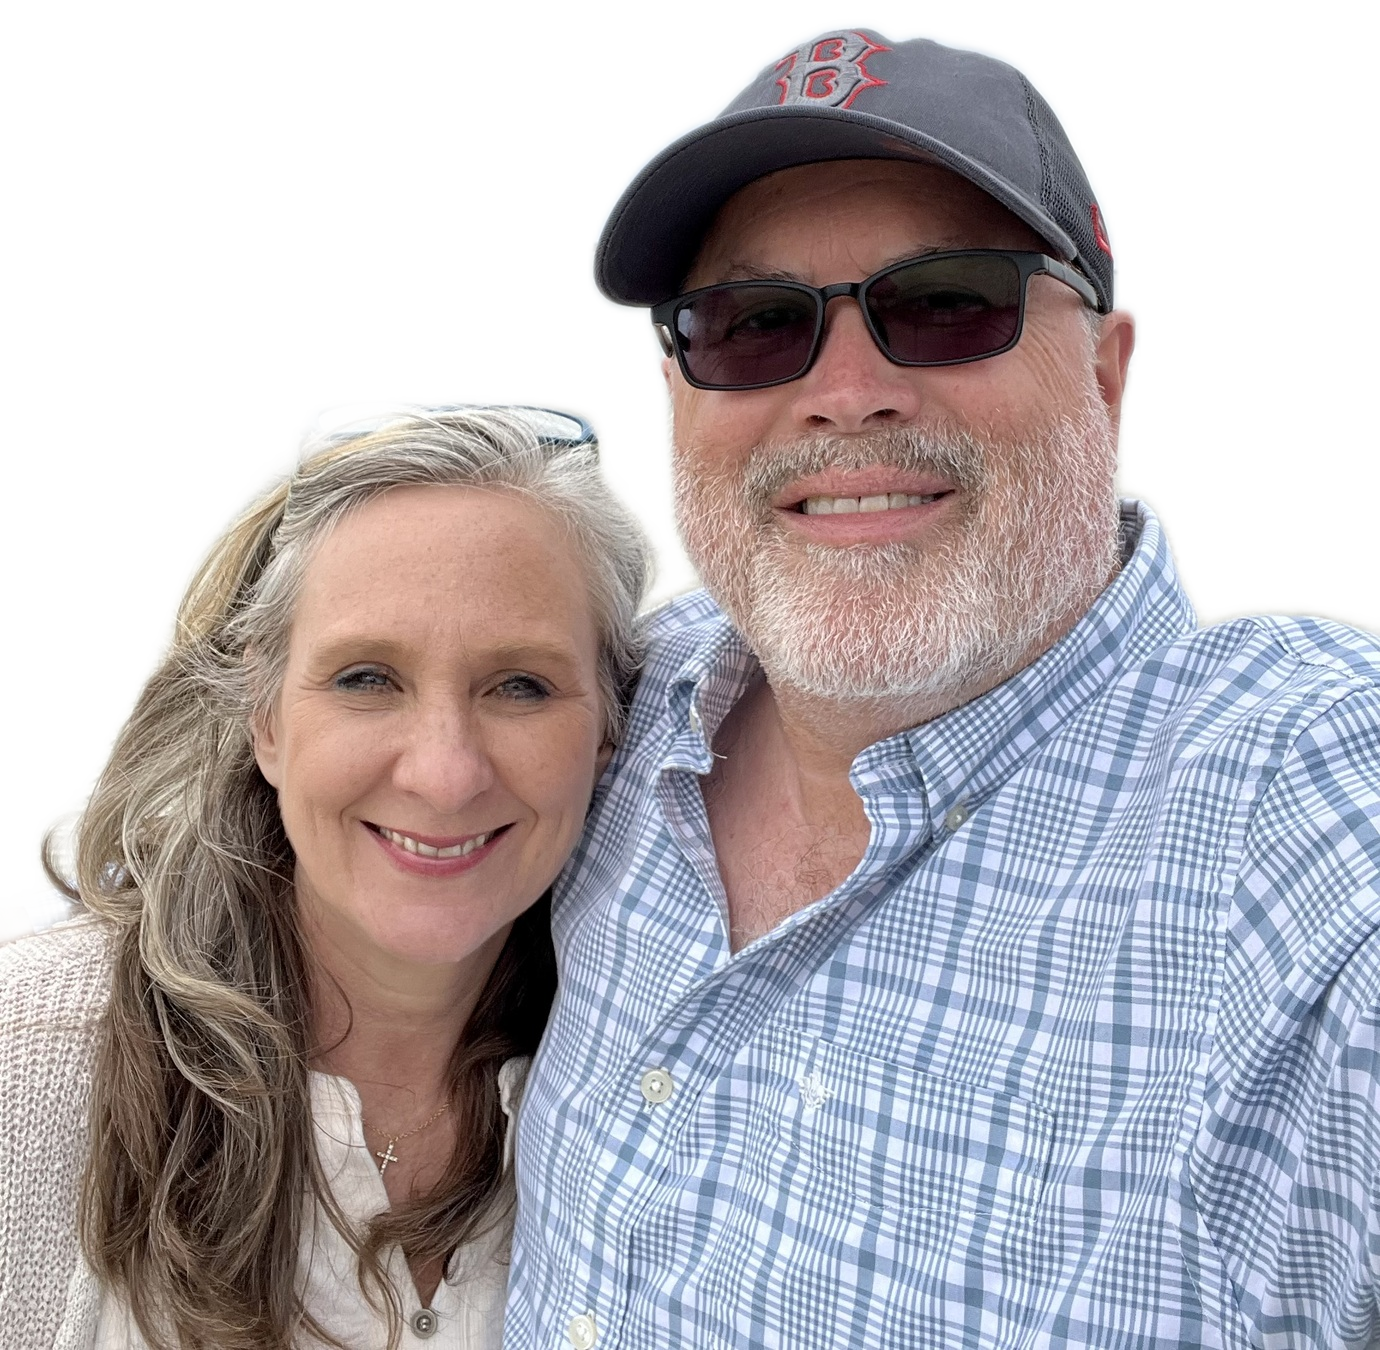 Tim & Beth on furlough March 2022